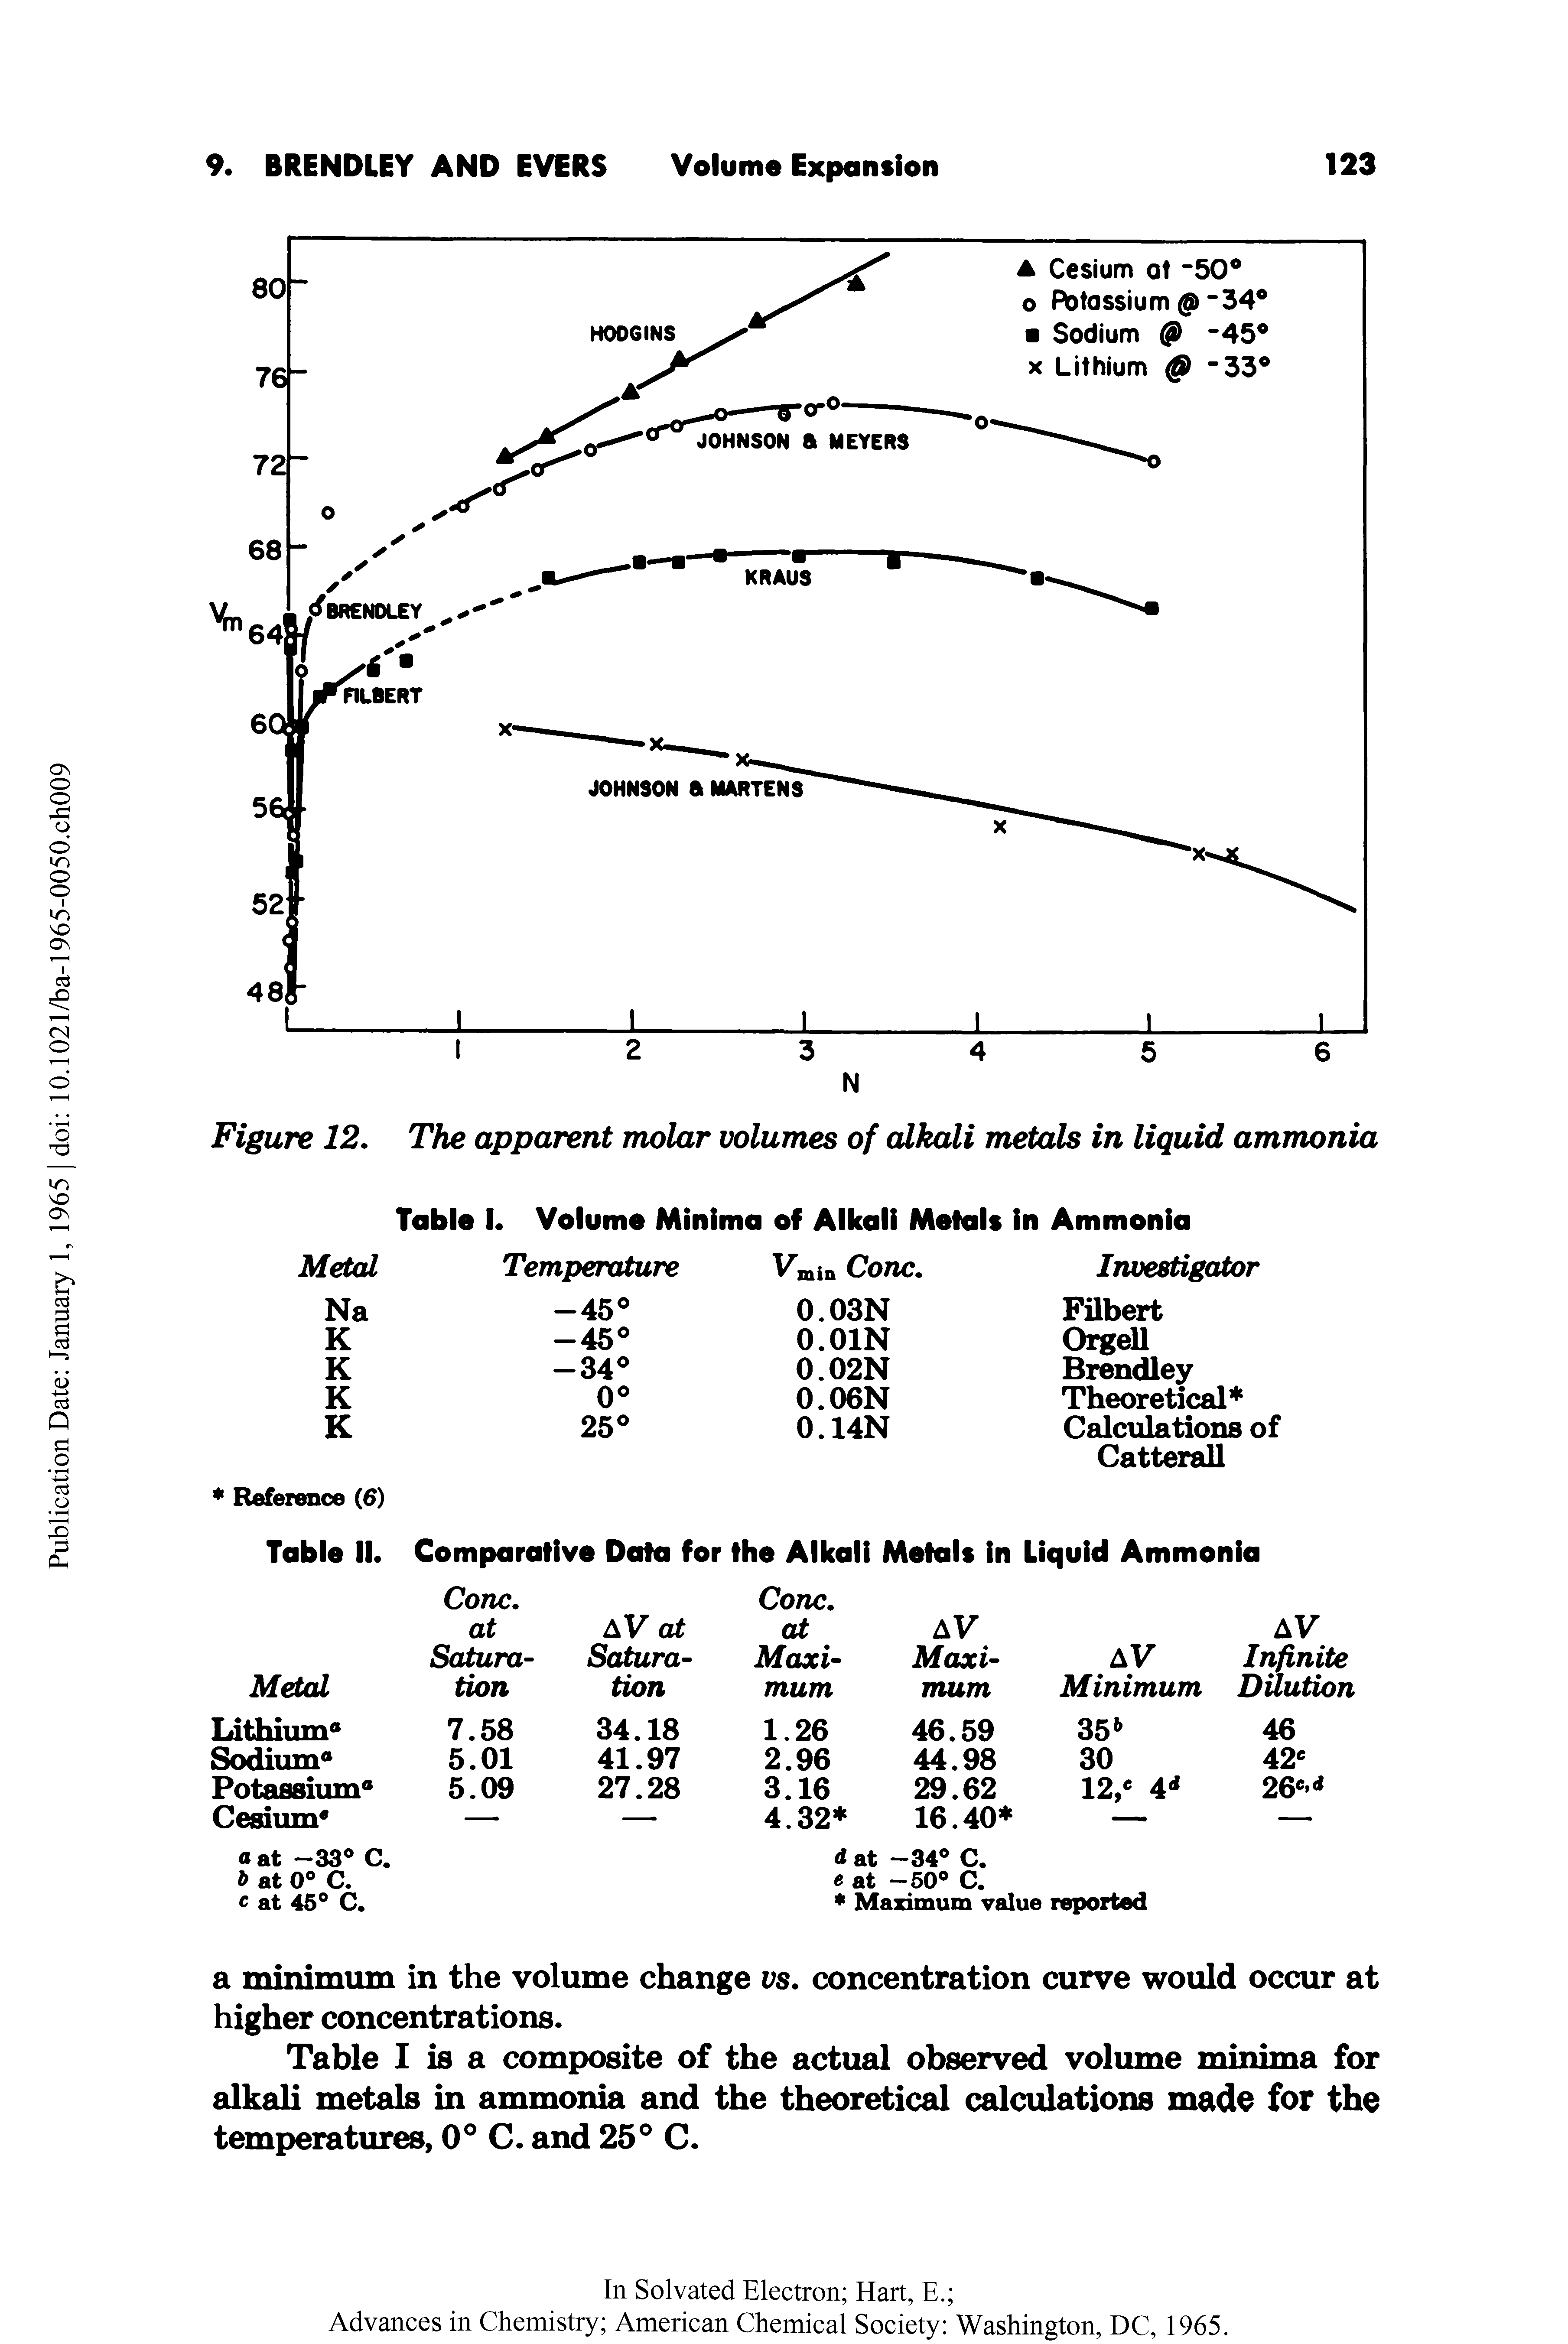 Figure 12. The apparent molar volumes of alkali metals in liquid ammonia...